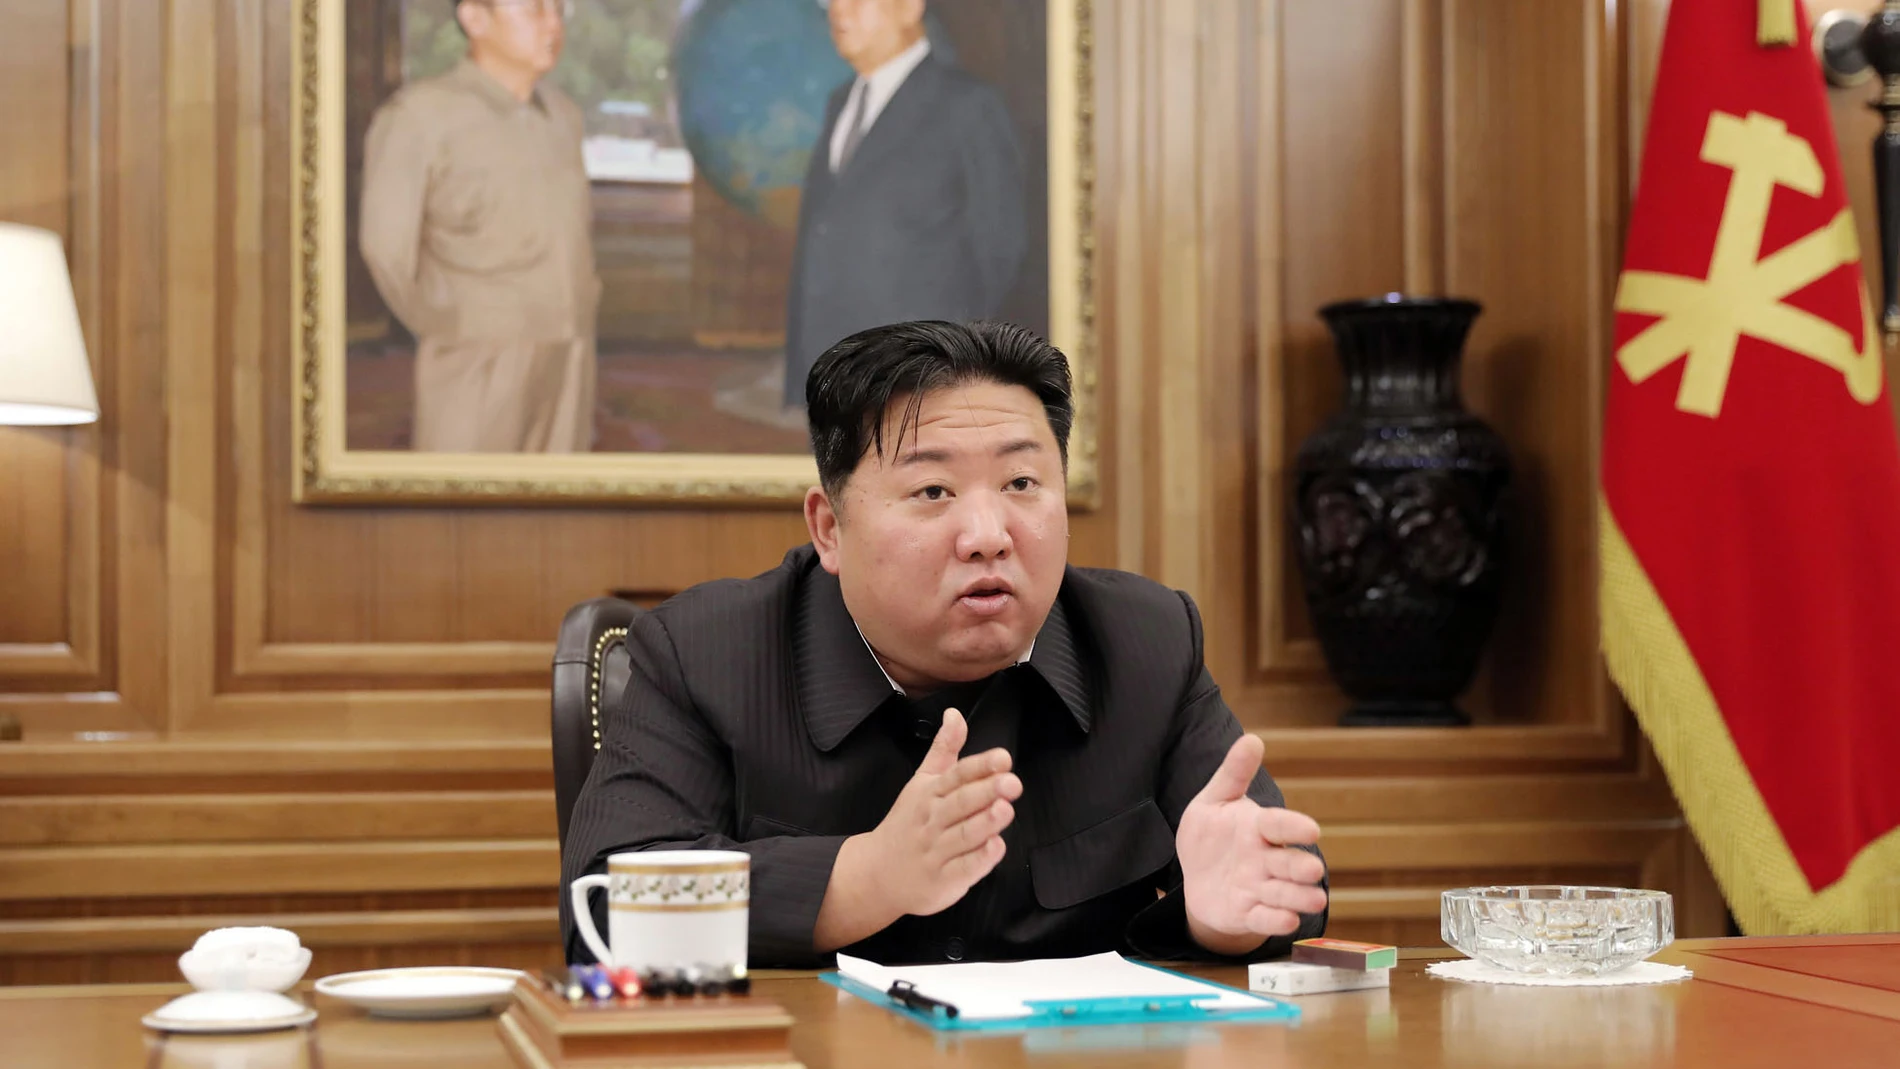 El líder norcoreano Kim Jong Un donó medicamentos de su reserva personal, un aparente esfuerzo por pulir su imagen en un momento de extrema dificultad